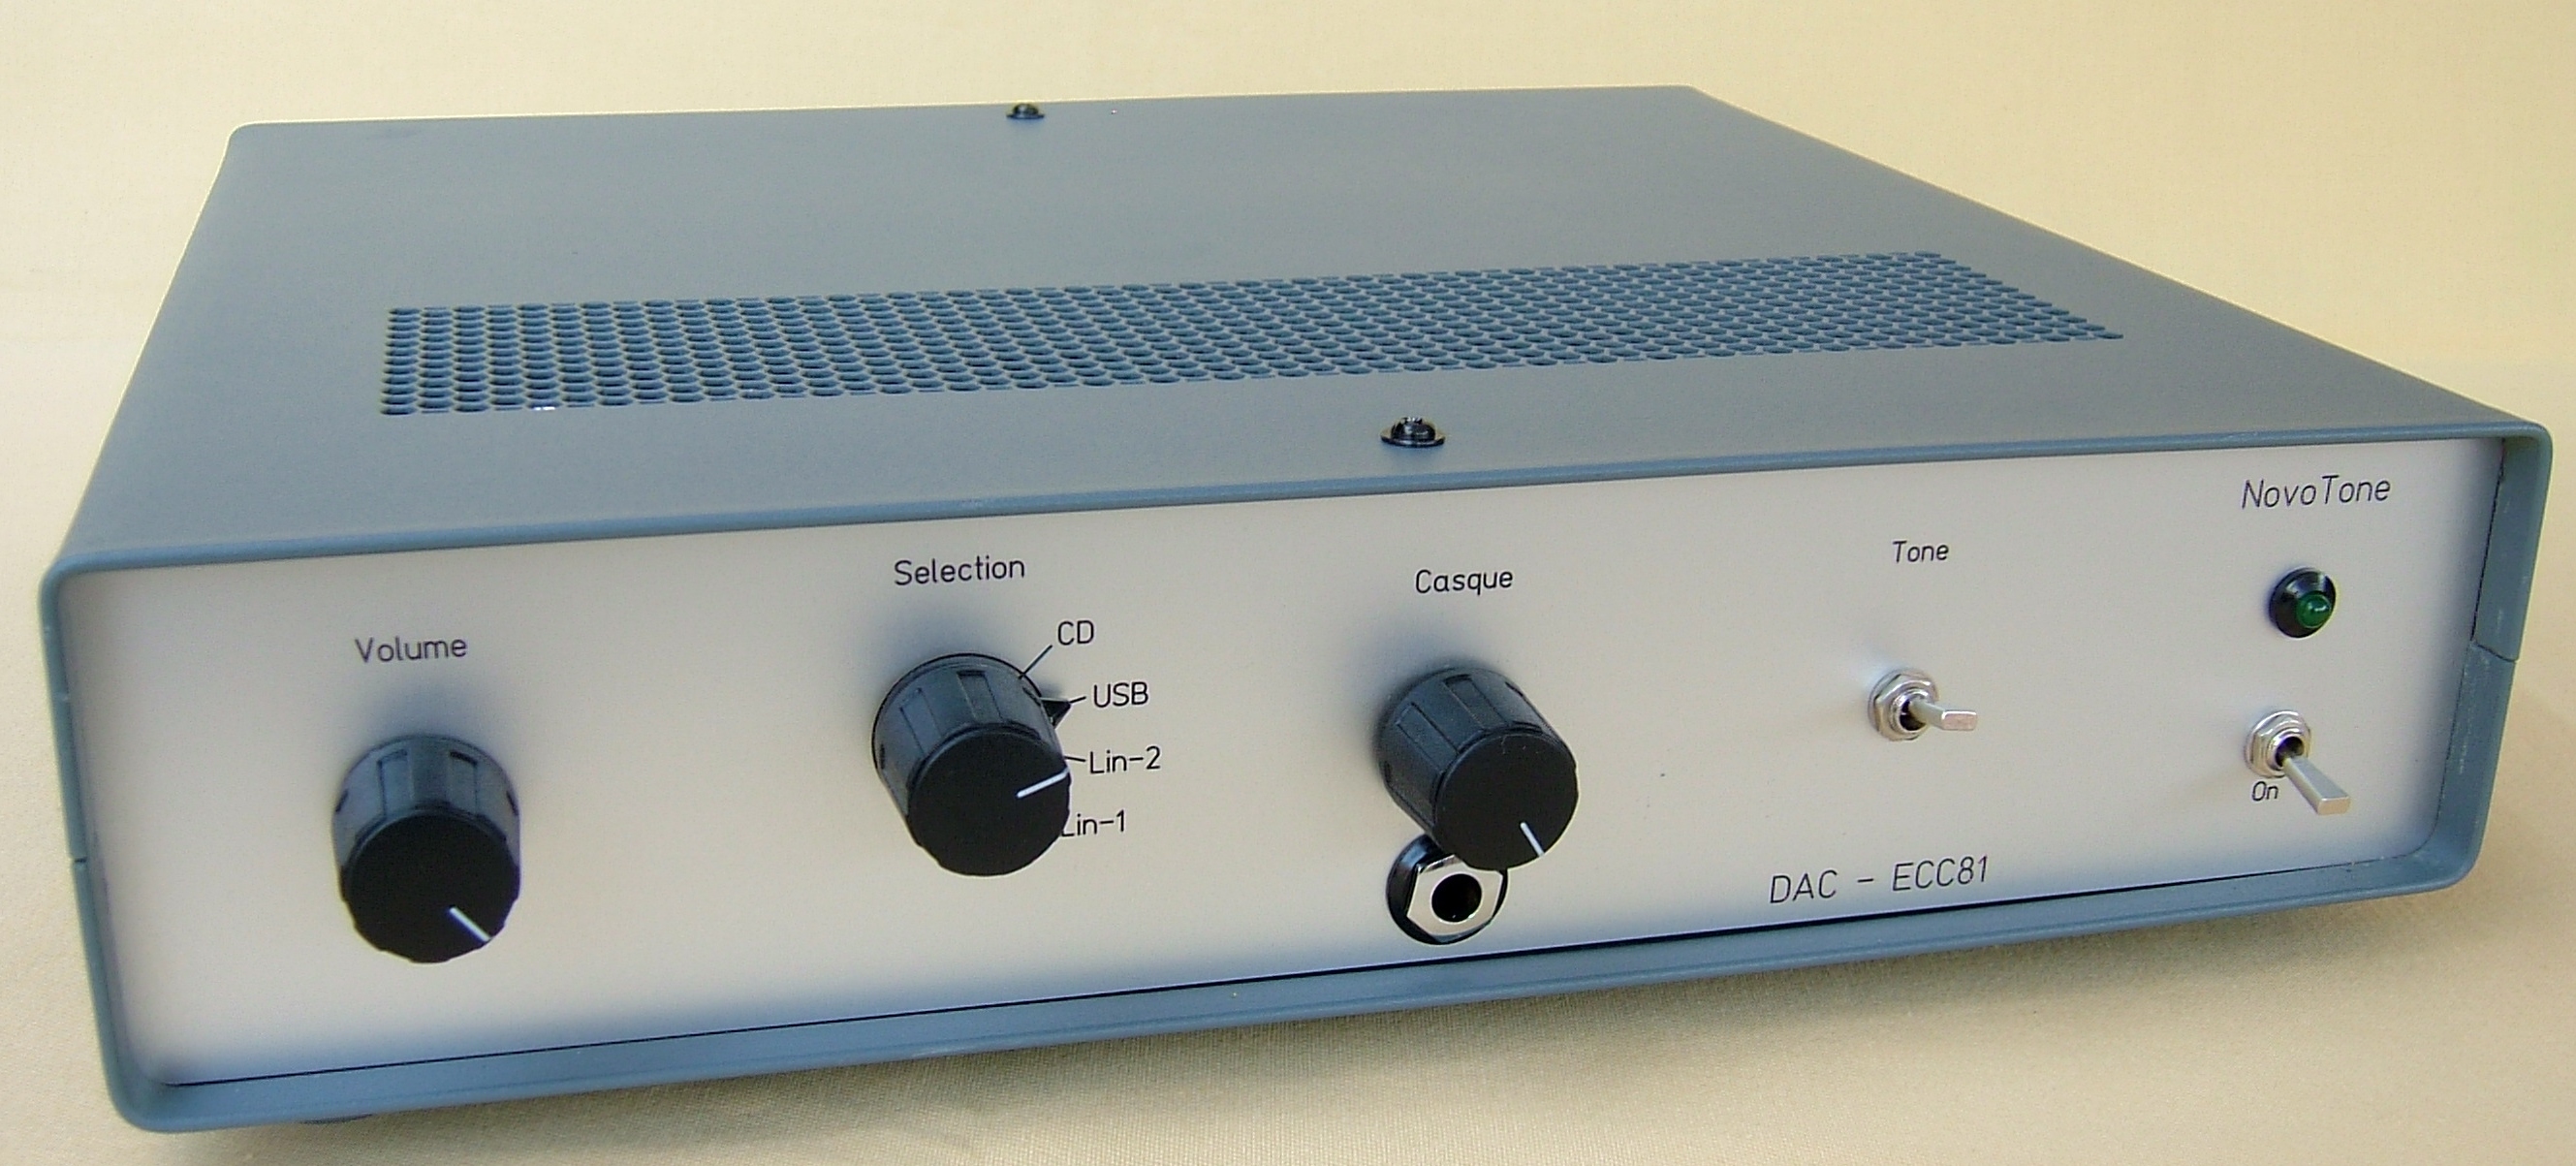 NovoTone - Préamplificateur stéréophonique à tubes - Entrées USB – S/P DIF - 2 Linéaires et Sortie Casque